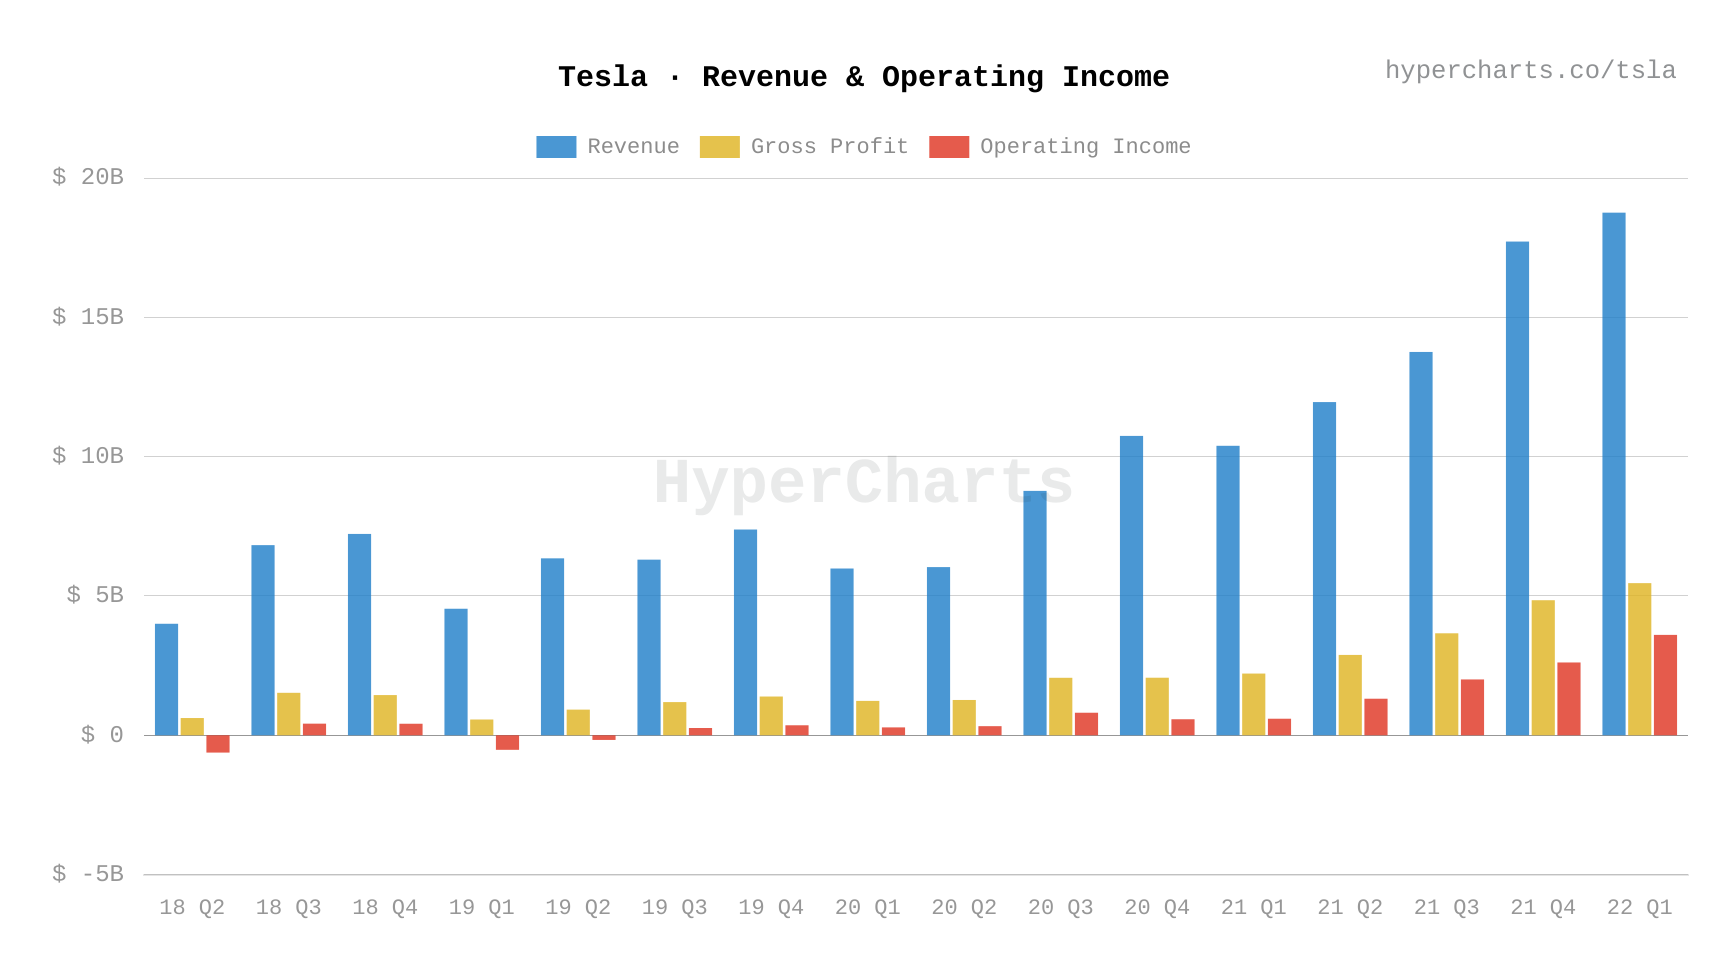 Tesla had its most profitable quarter